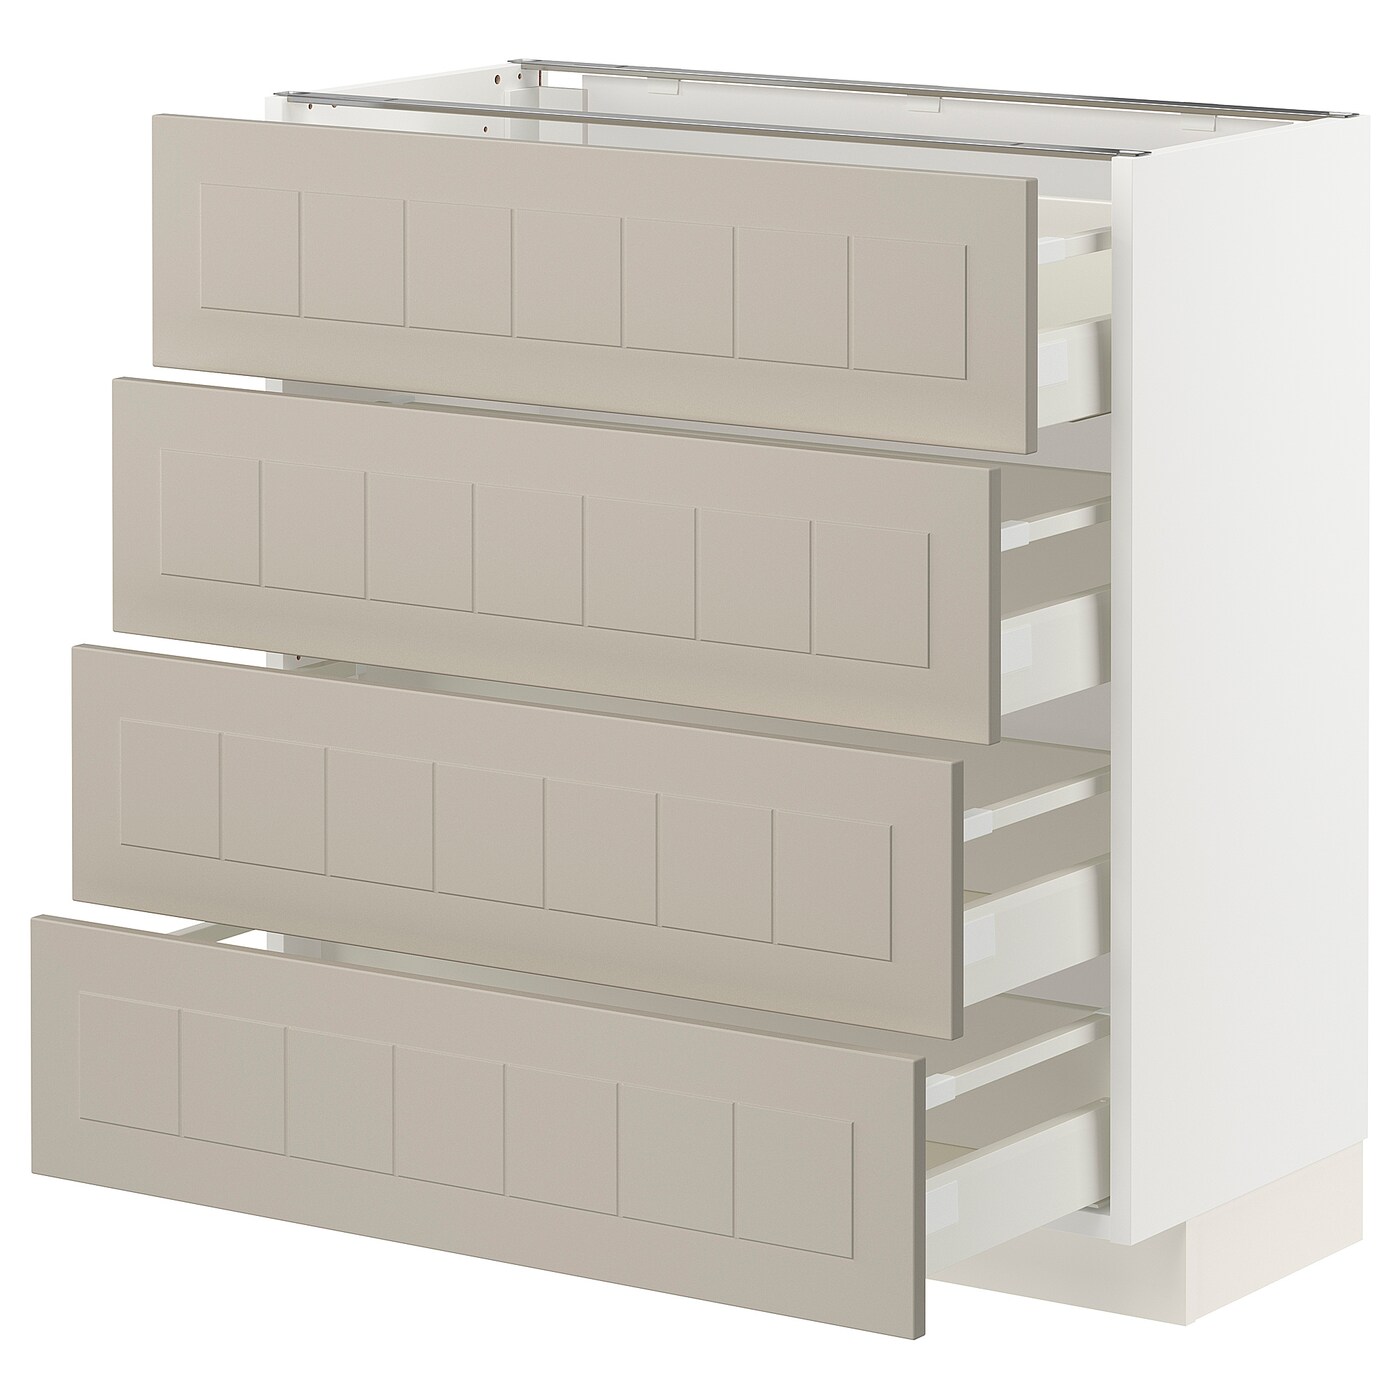 Напольный шкаф  - IKEA METOD MAXIMERA, 88x39,5x80см, белый/светло-серый, МЕТОД МАКСИМЕРА ИКЕА